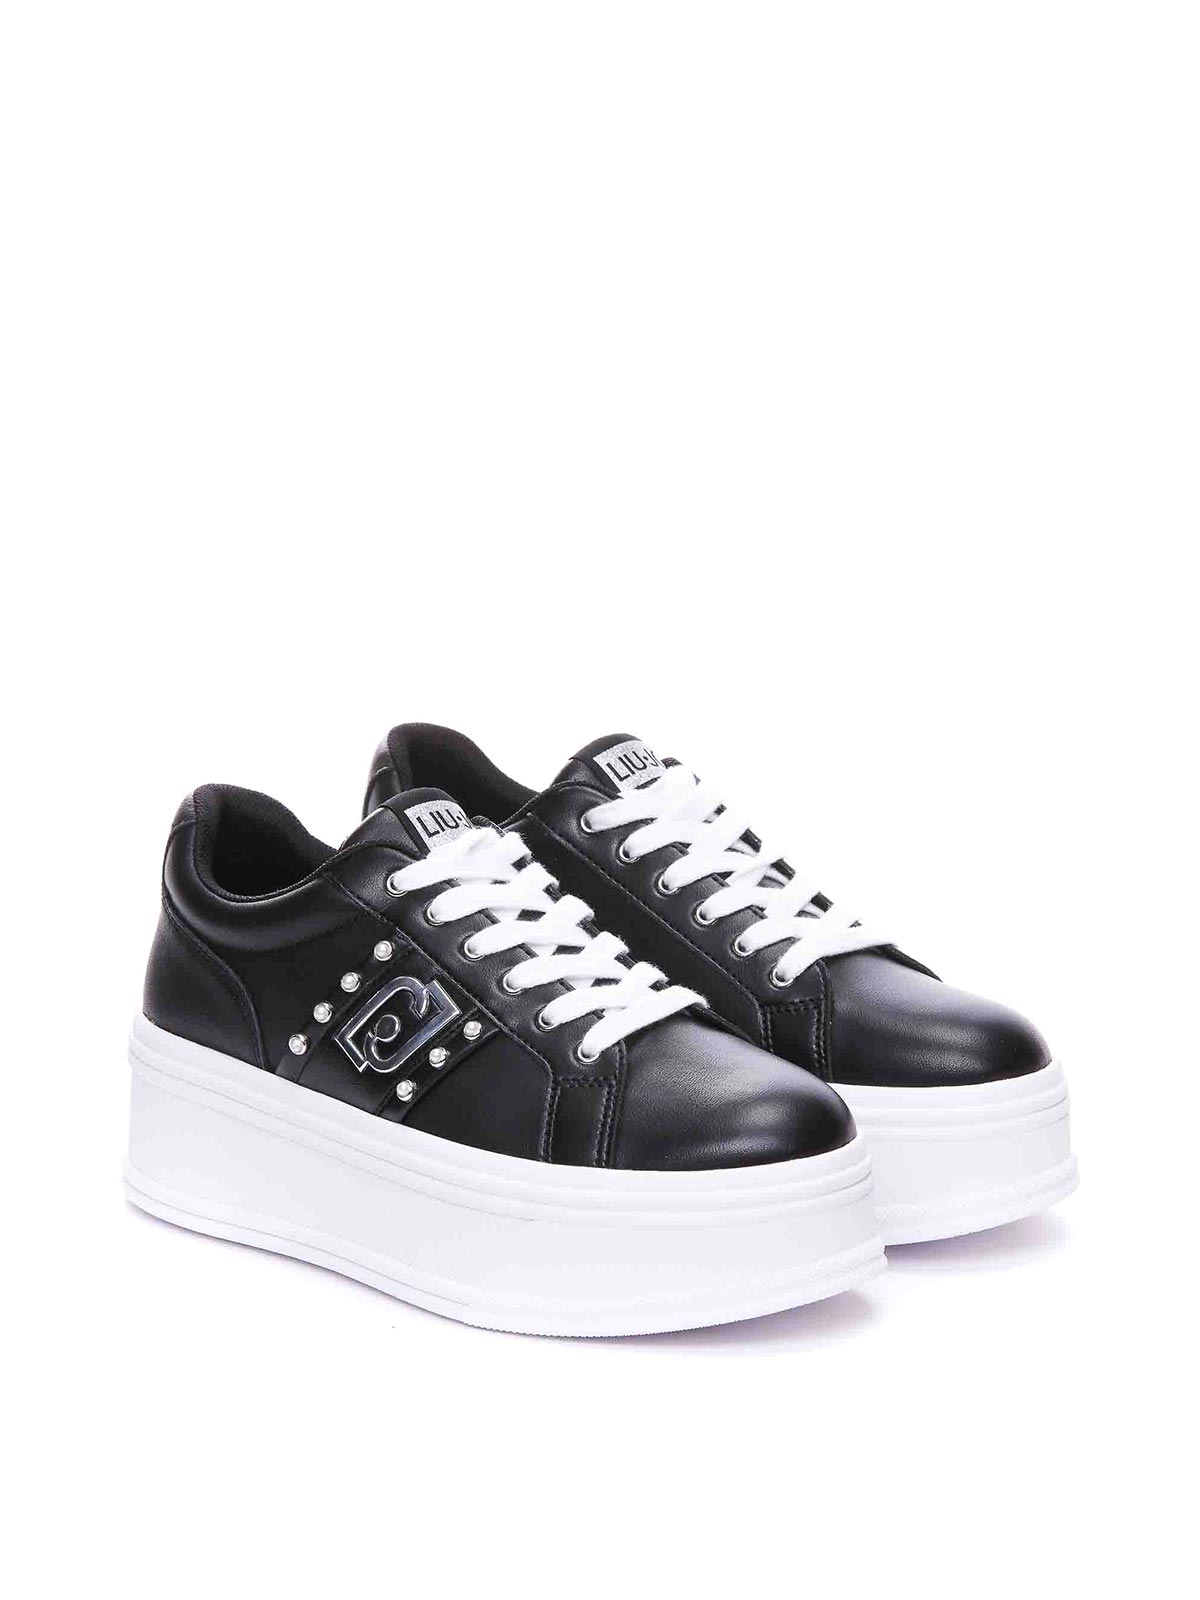 Shop Liu •jo Liu Jo Black Selma Sneakers